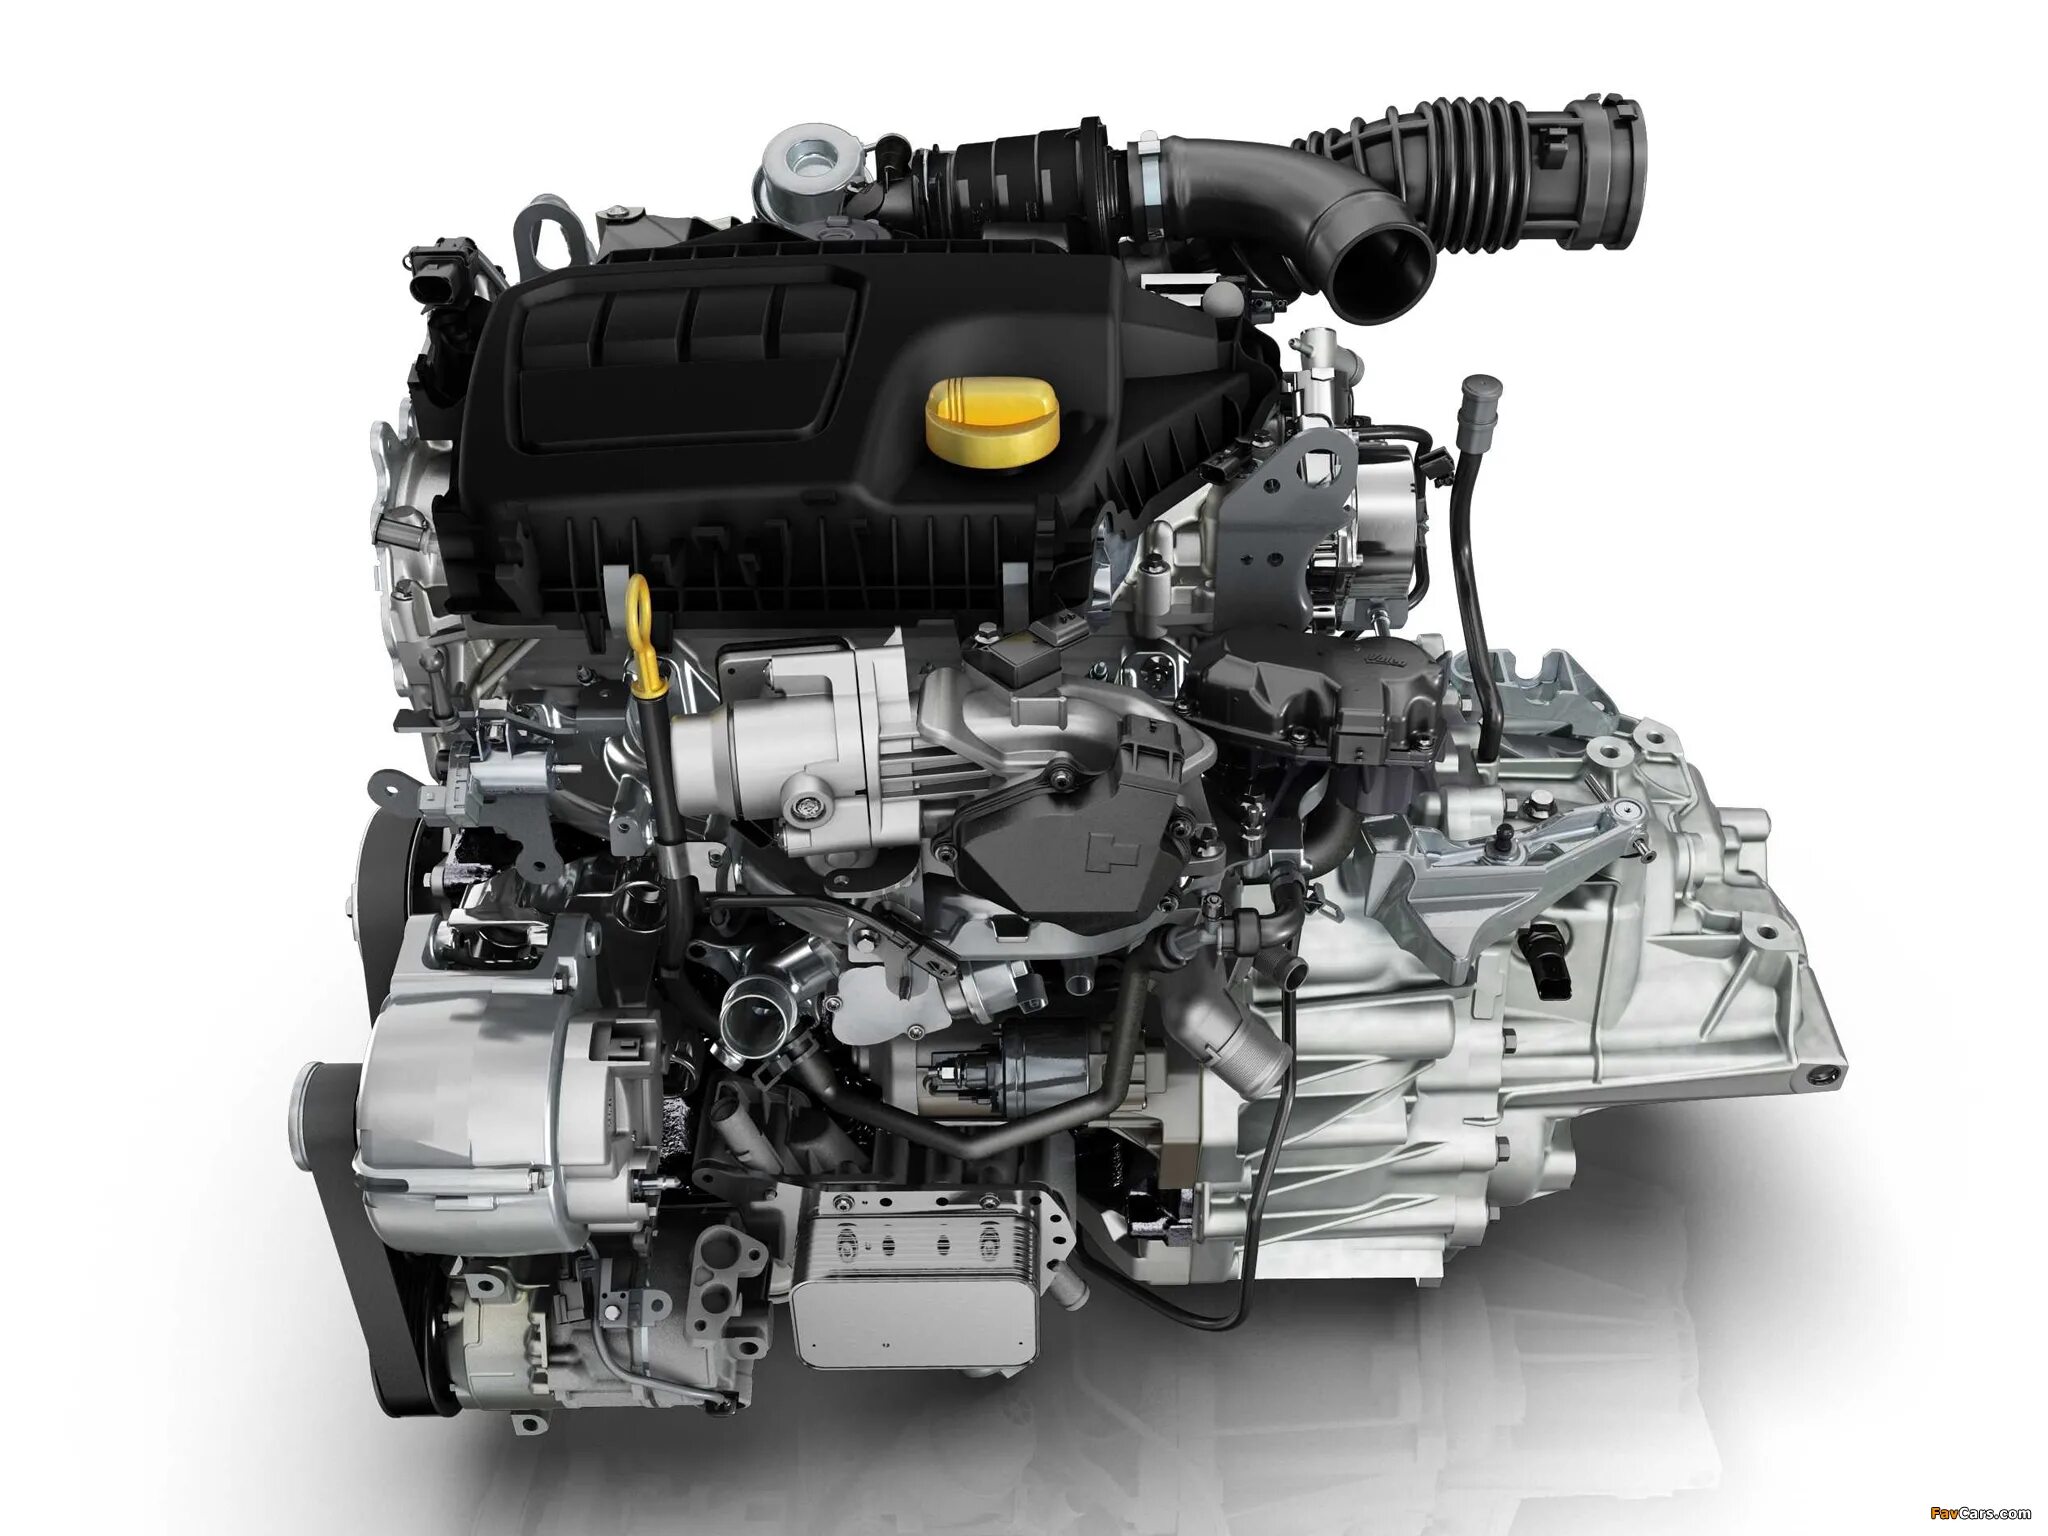 R9m 1.6 DCI 130л.с. Renault r9m 1.6 DCI. Nissan x-Trail двигатель m9r. R9m 1.6 DCI дизельный турбированный 130. Дизельный мотор рено